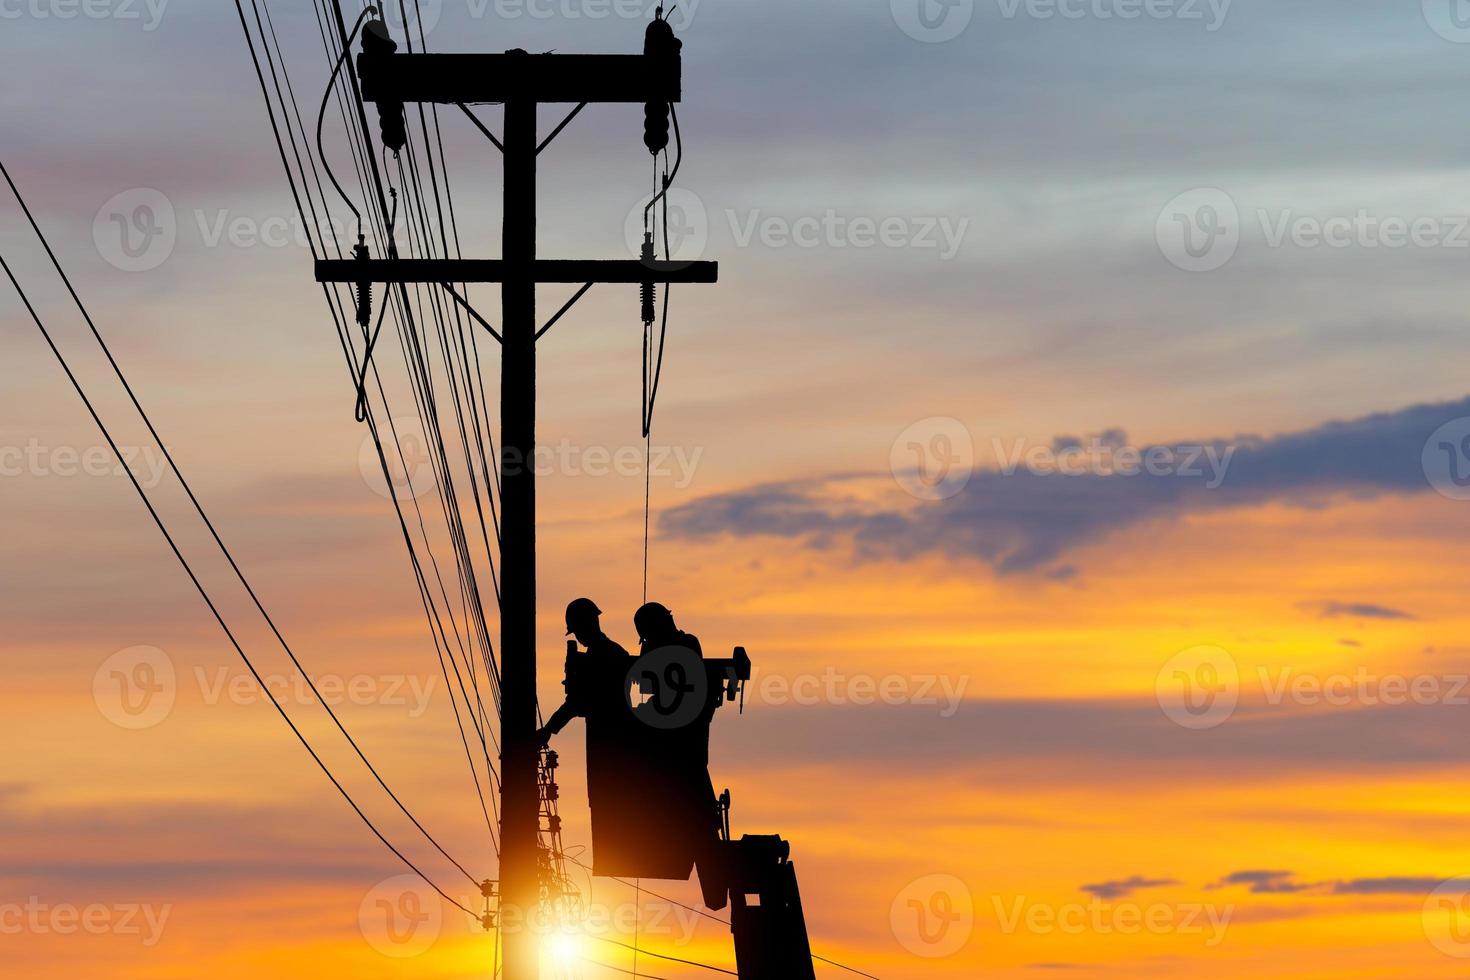 siluett av elektrikerbefäl klättrar i en stolpe och använder en linbana för att upprätthålla ett högspänningsledningssystem, skuggan av en elektriker linjeman reparatör arbetare vid klättring arbete på elektrisk stolpe foto